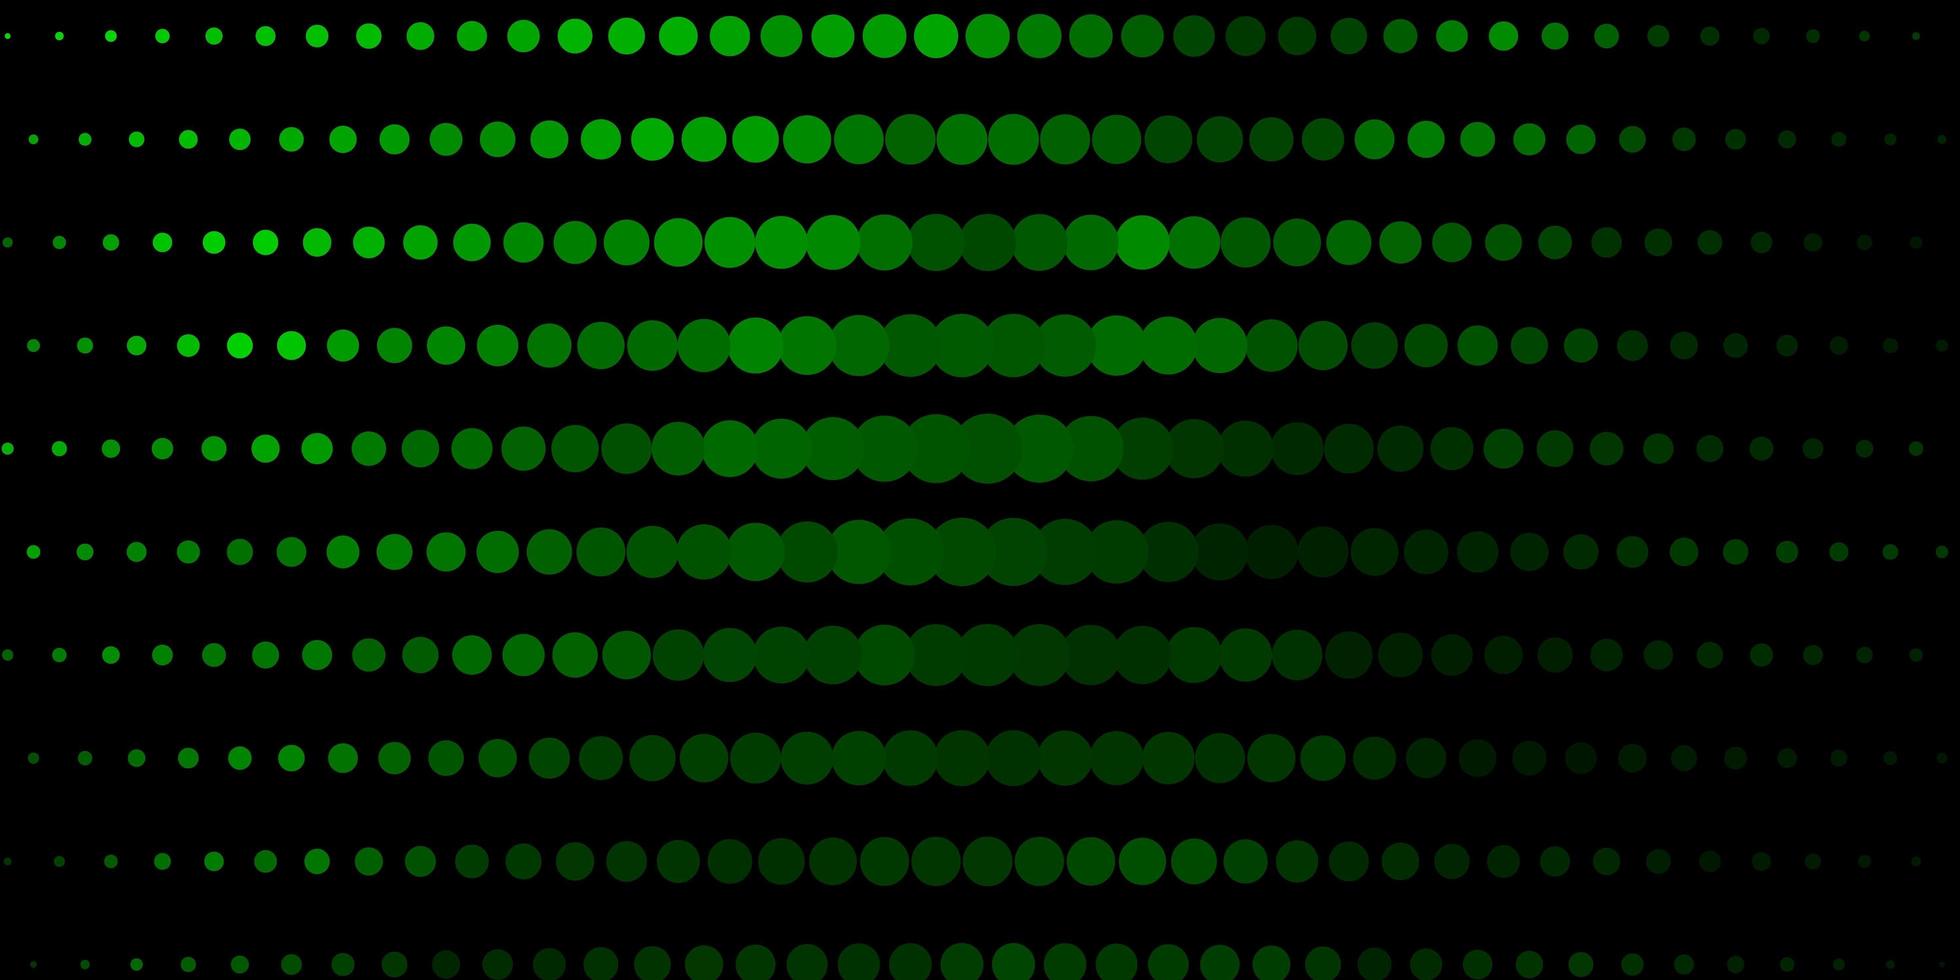 trama vettoriale verde scuro con cerchi.